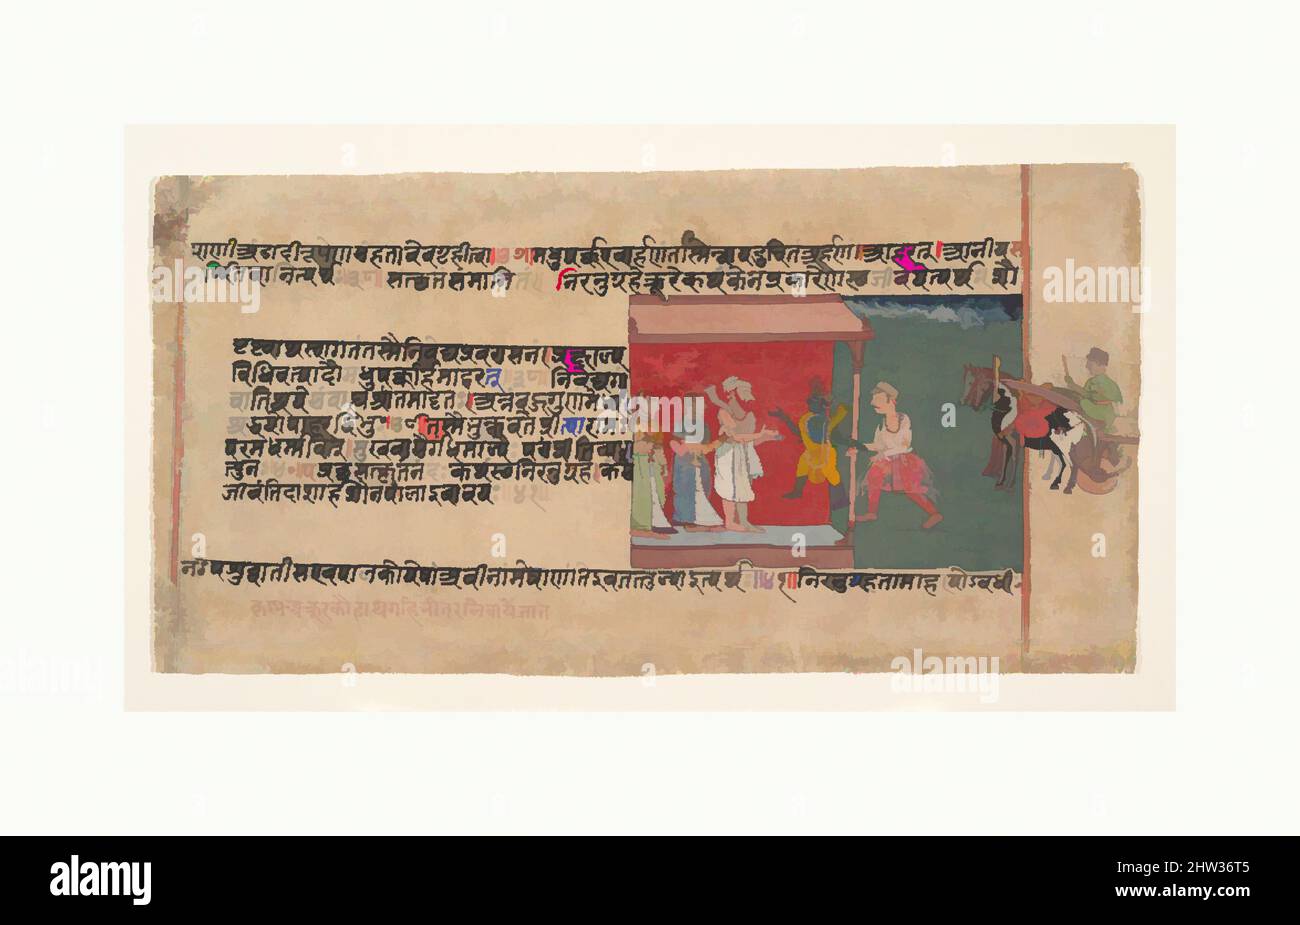 L'art inspiré par Krishna apporte le Messager Akrura à l'intérieur de la maison de Nanda: Page d'un Bhagavata Purana Manuscript dispersé, ca. 1620–30, Inde (Rajasthan, Mewar), encre et aquarelle opaque sur papier, 6 1/2 x 13 1/4 po. (16,5 x 33,7 cm), peintures, Akrura a été envoyé par le roi maléfique, oeuvres classiques modernisées par Artotop avec une touche de modernité. Formes, couleur et valeur, impact visuel accrocheur sur l'art émotions par la liberté d'œuvres d'art d'une manière contemporaine. Un message intemporel qui cherche une nouvelle direction créative. Artistes qui se tournent vers le support numérique et créent le NFT Artotop Banque D'Images